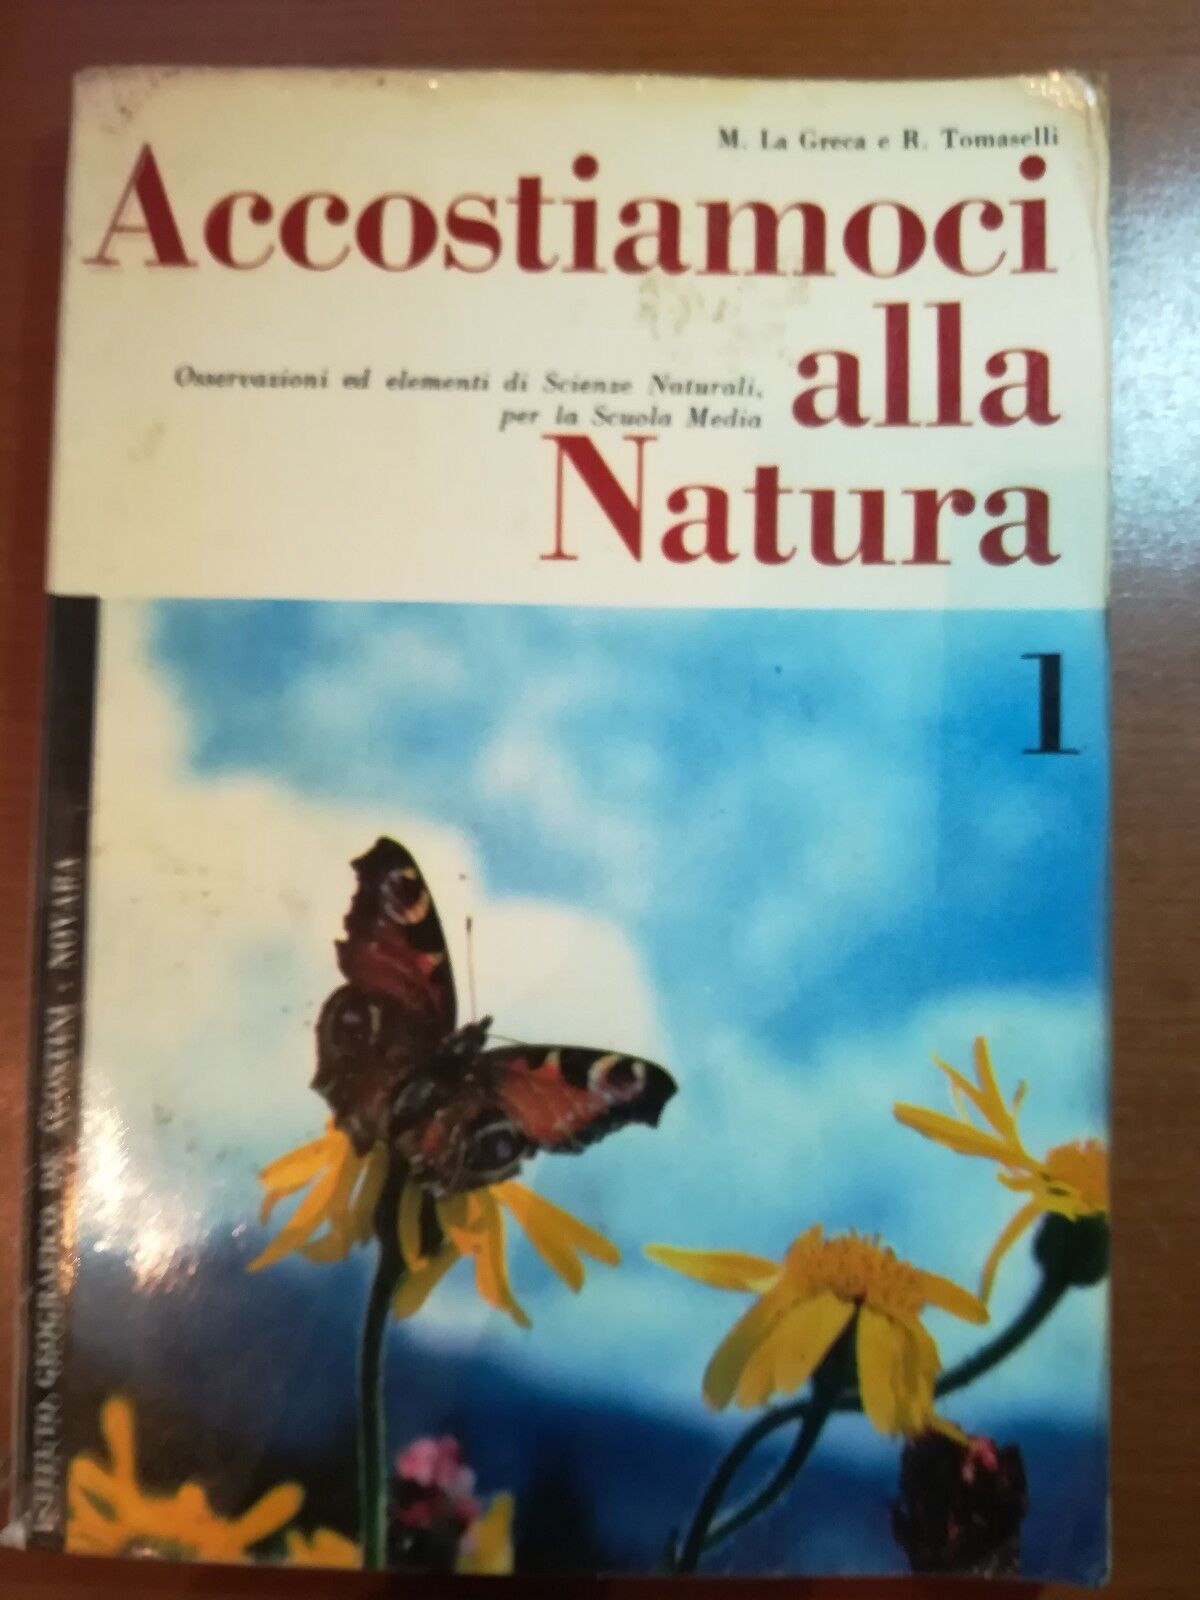 Accostiamoci alla natura 1 - M.La greca , R. Tomaselli - De Agostini - 1967 - M